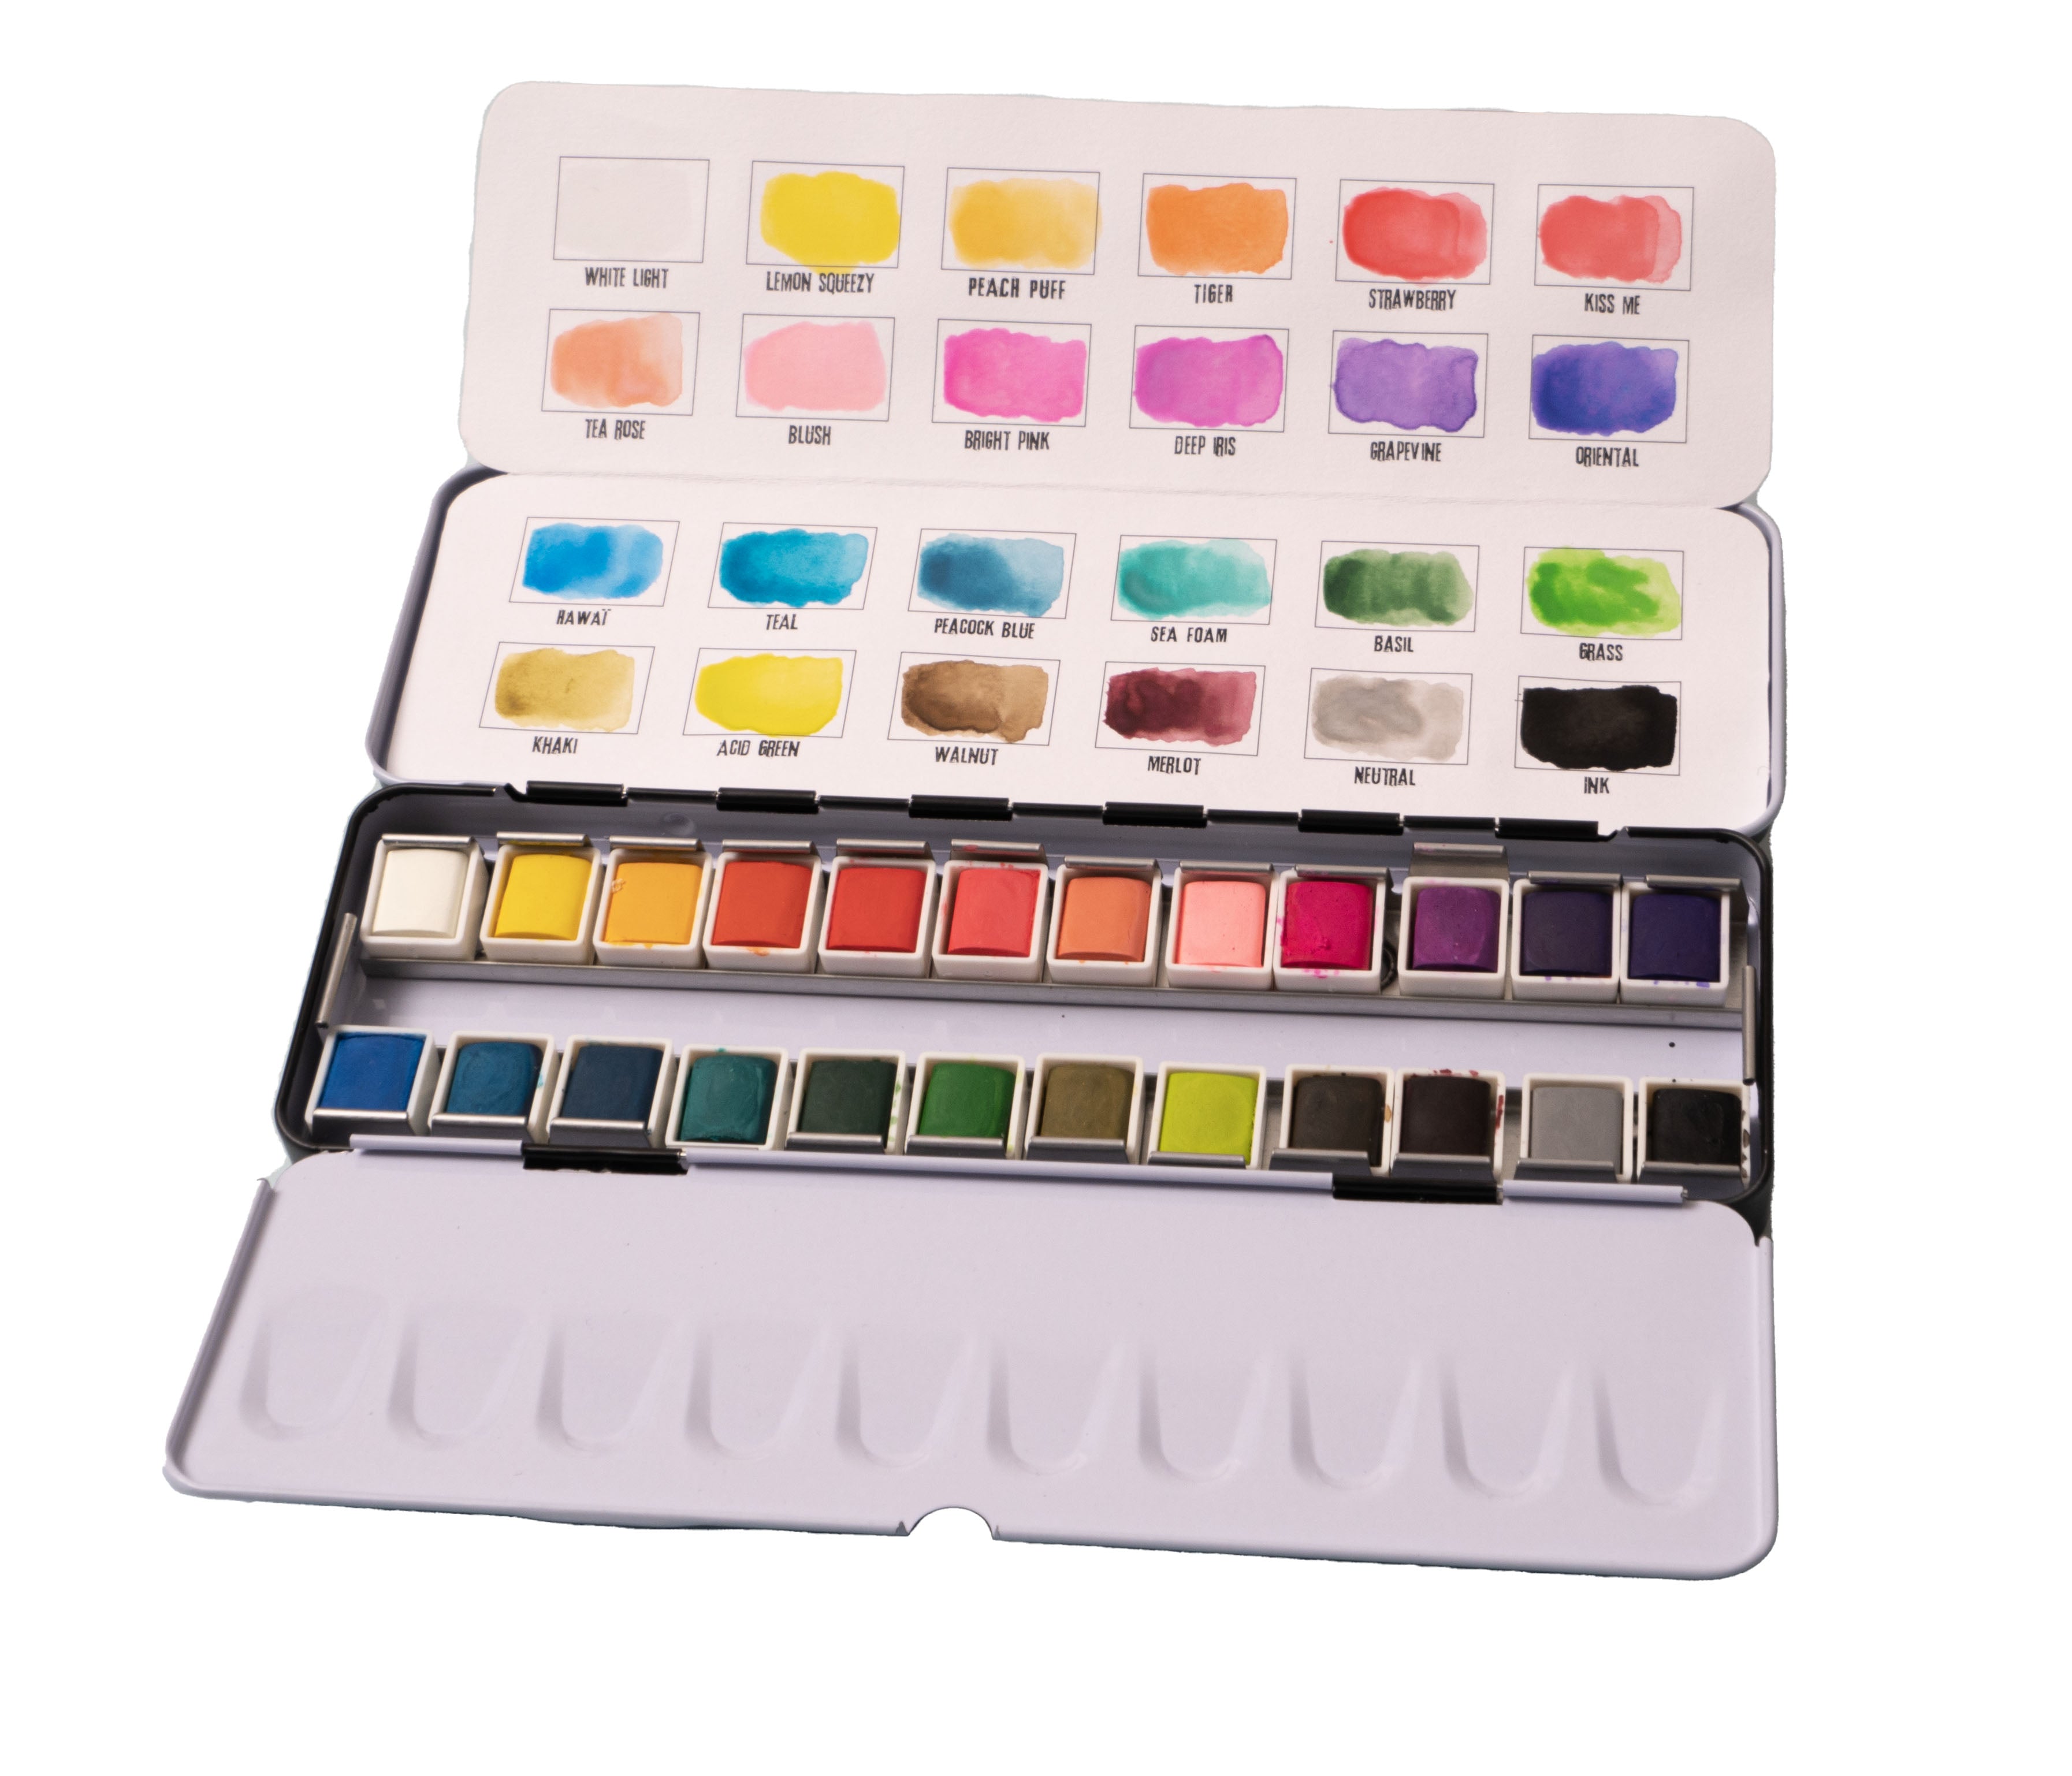 SL Watercolor Paint 24 Colors Essentials +ABM 220x70x20mm 1 PC 02